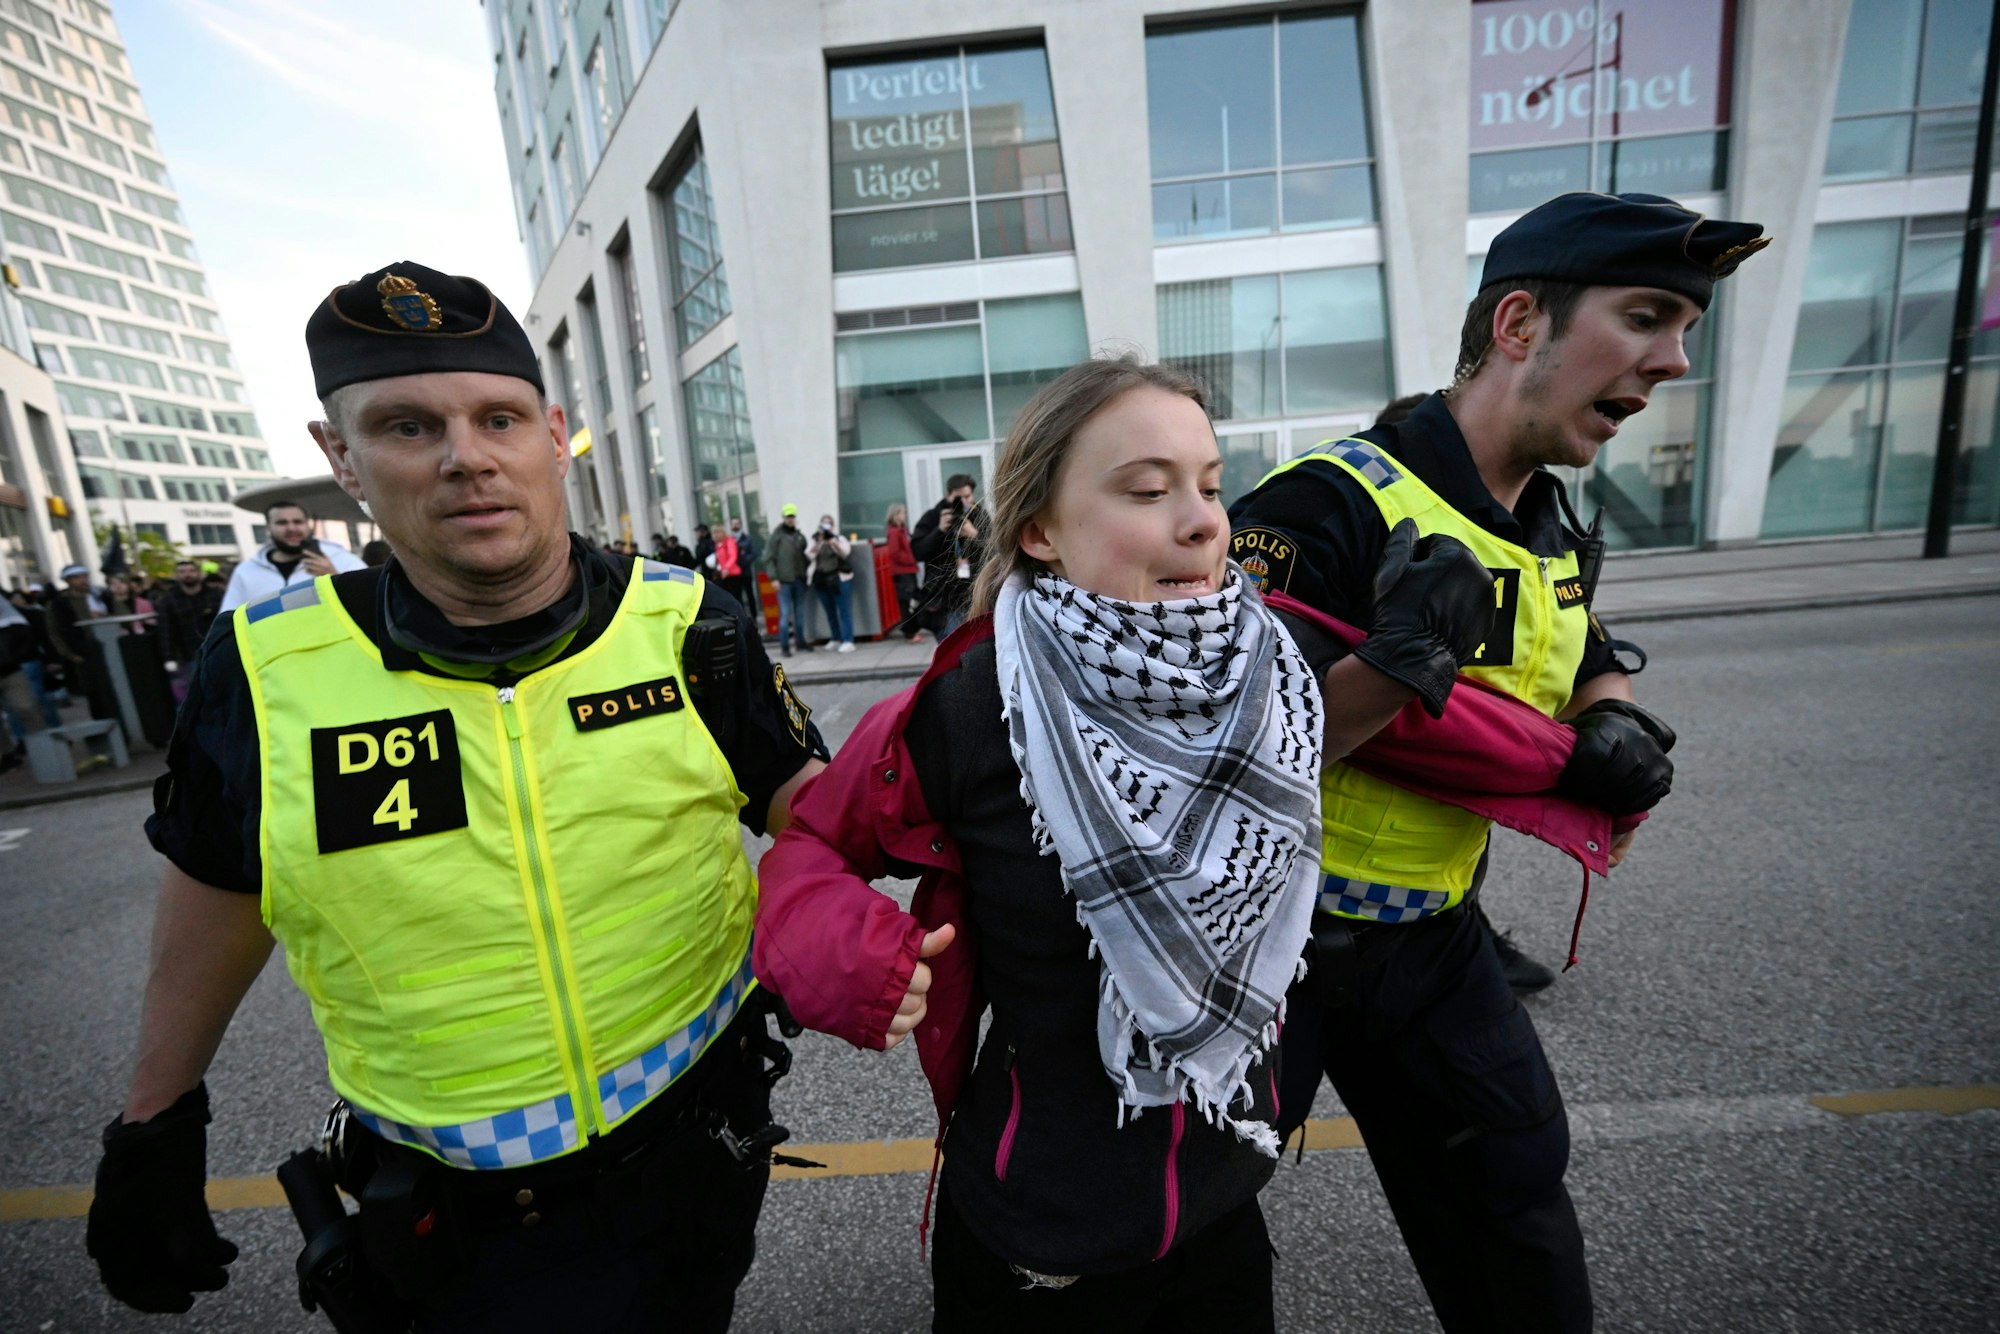 Auch die schwedische Klimaaktivistin Greta Thunberg nahm an der „Stop Israel“-Demonstration teil, wurde kurz darauf von der Polizei abgeführt. Die Demonstrantinnen und Demonstranten riefen den Zuschauenden auf dem Weg in die Halle „Shame on you“, schämt euch, zu.